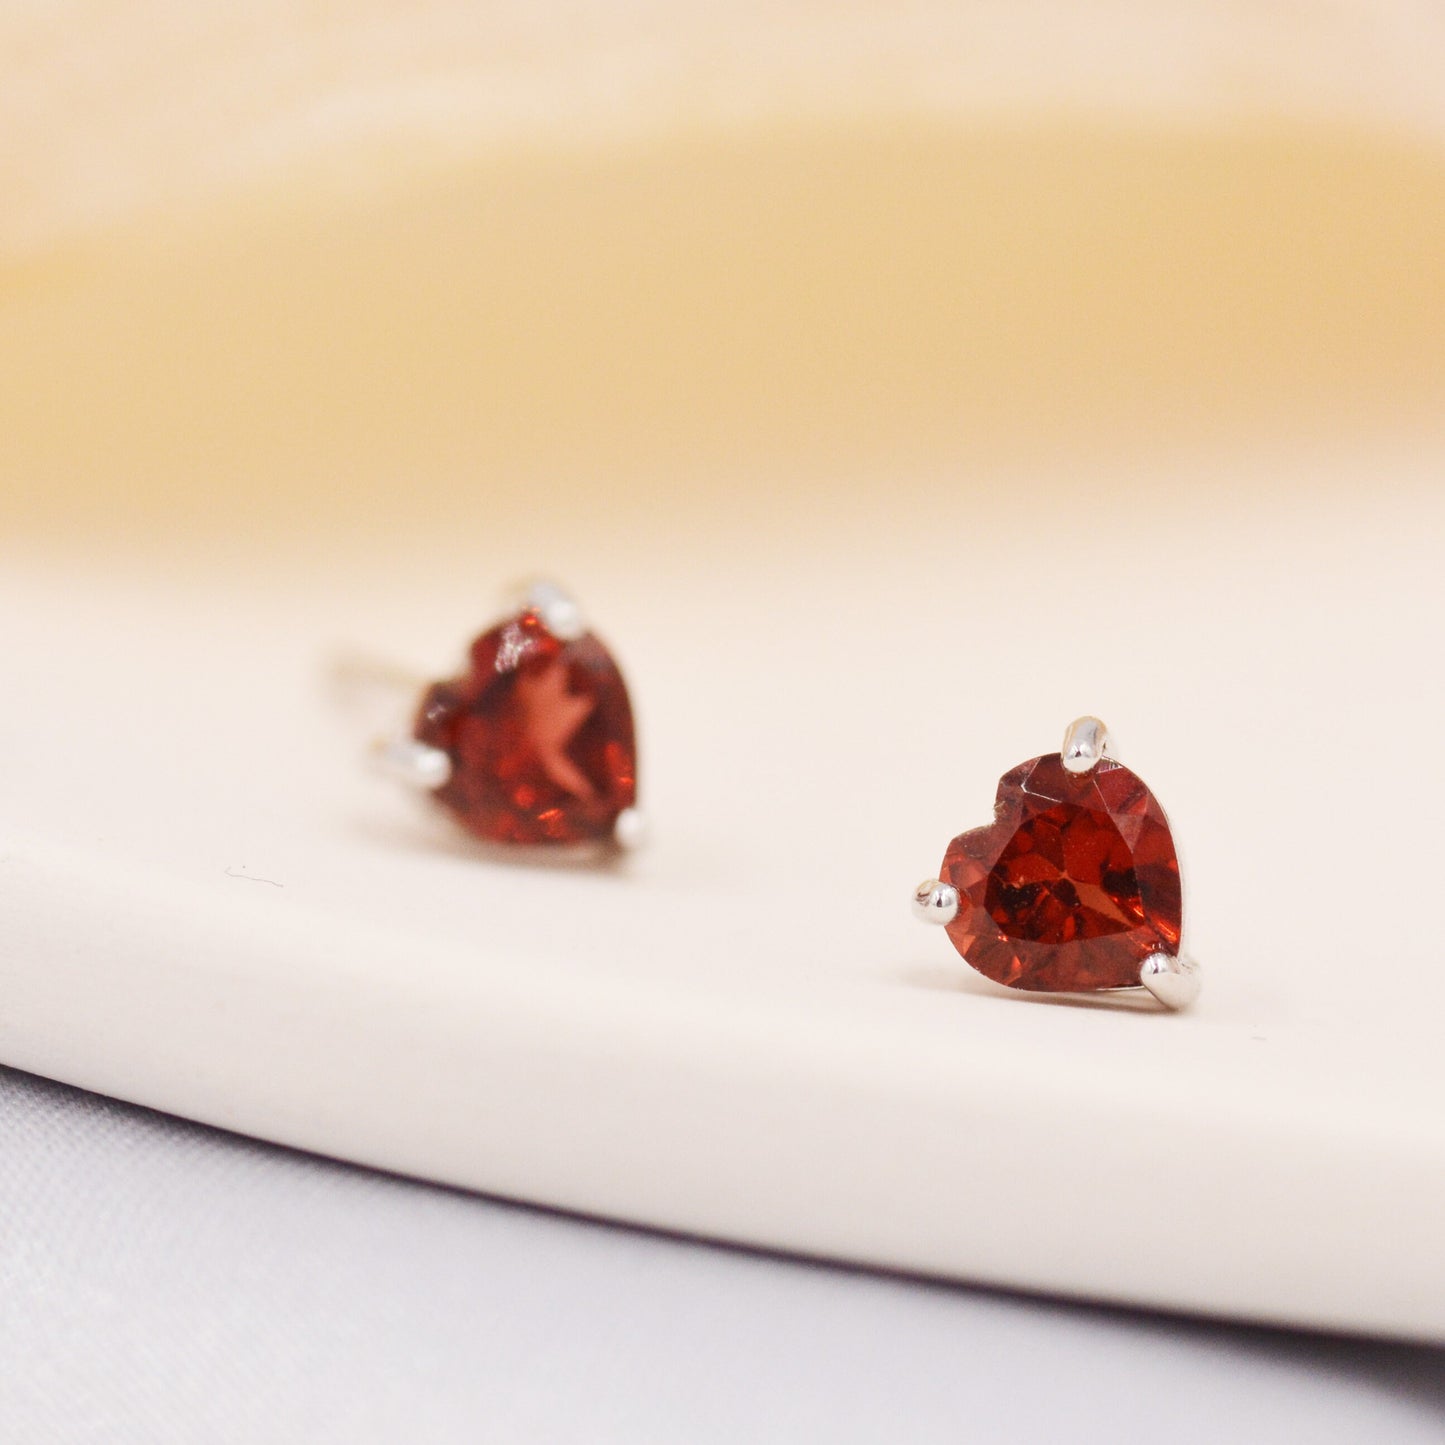 Natural Garnet Stone Heart Stud Earrings in Sterling Silver - 5mm Genuine Garnet Crystal Stud Earrings  - Semi Precious Gemstone